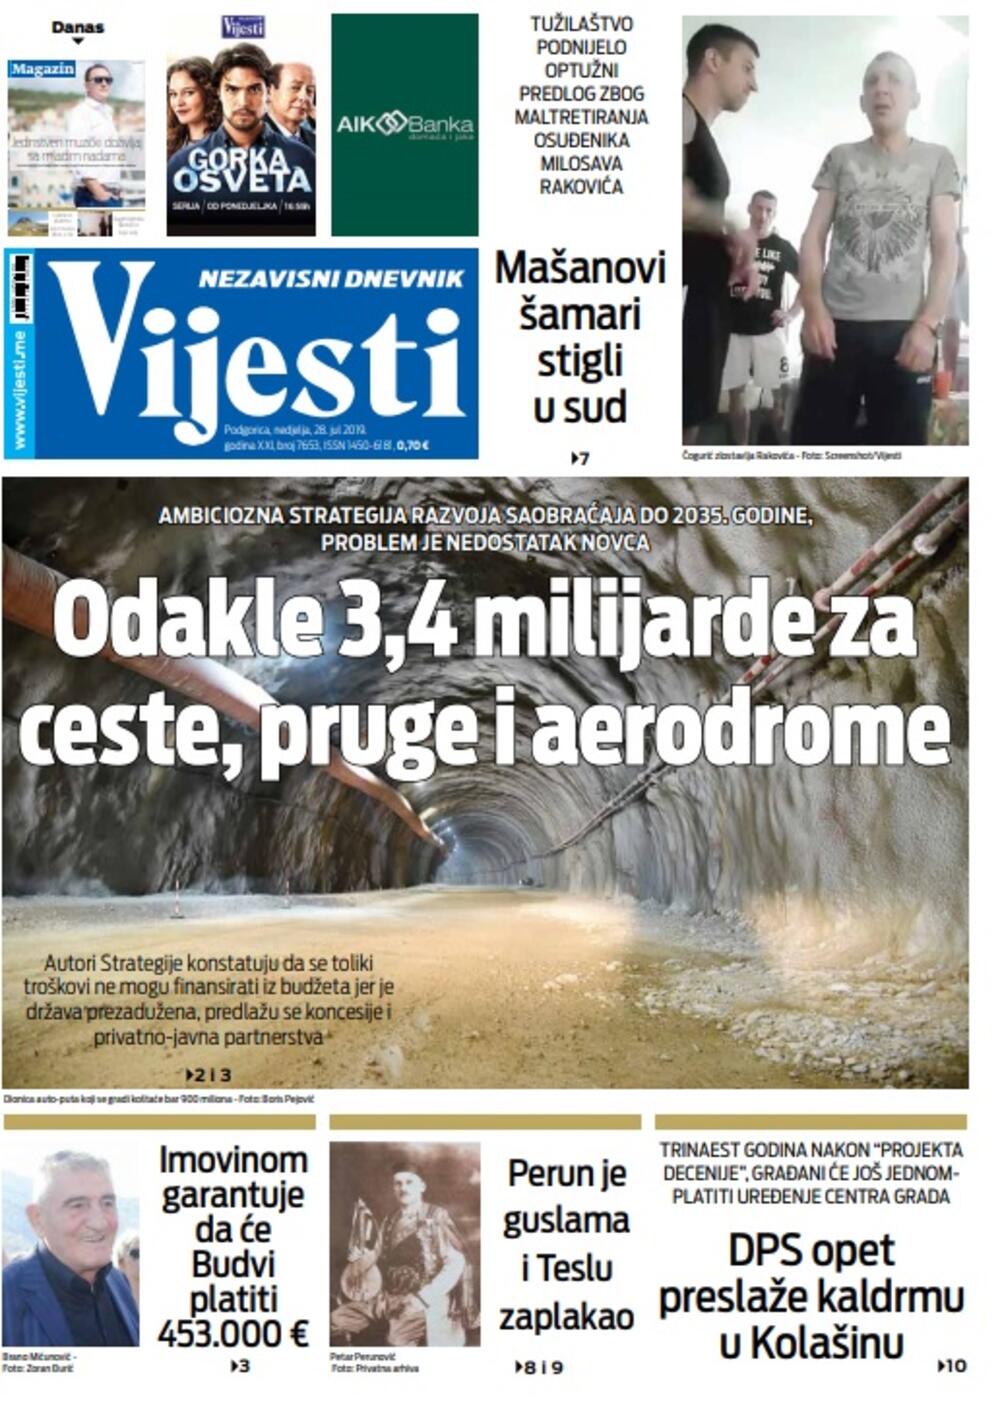 Naslovna strana "Vijesti", Foto: Vijesti